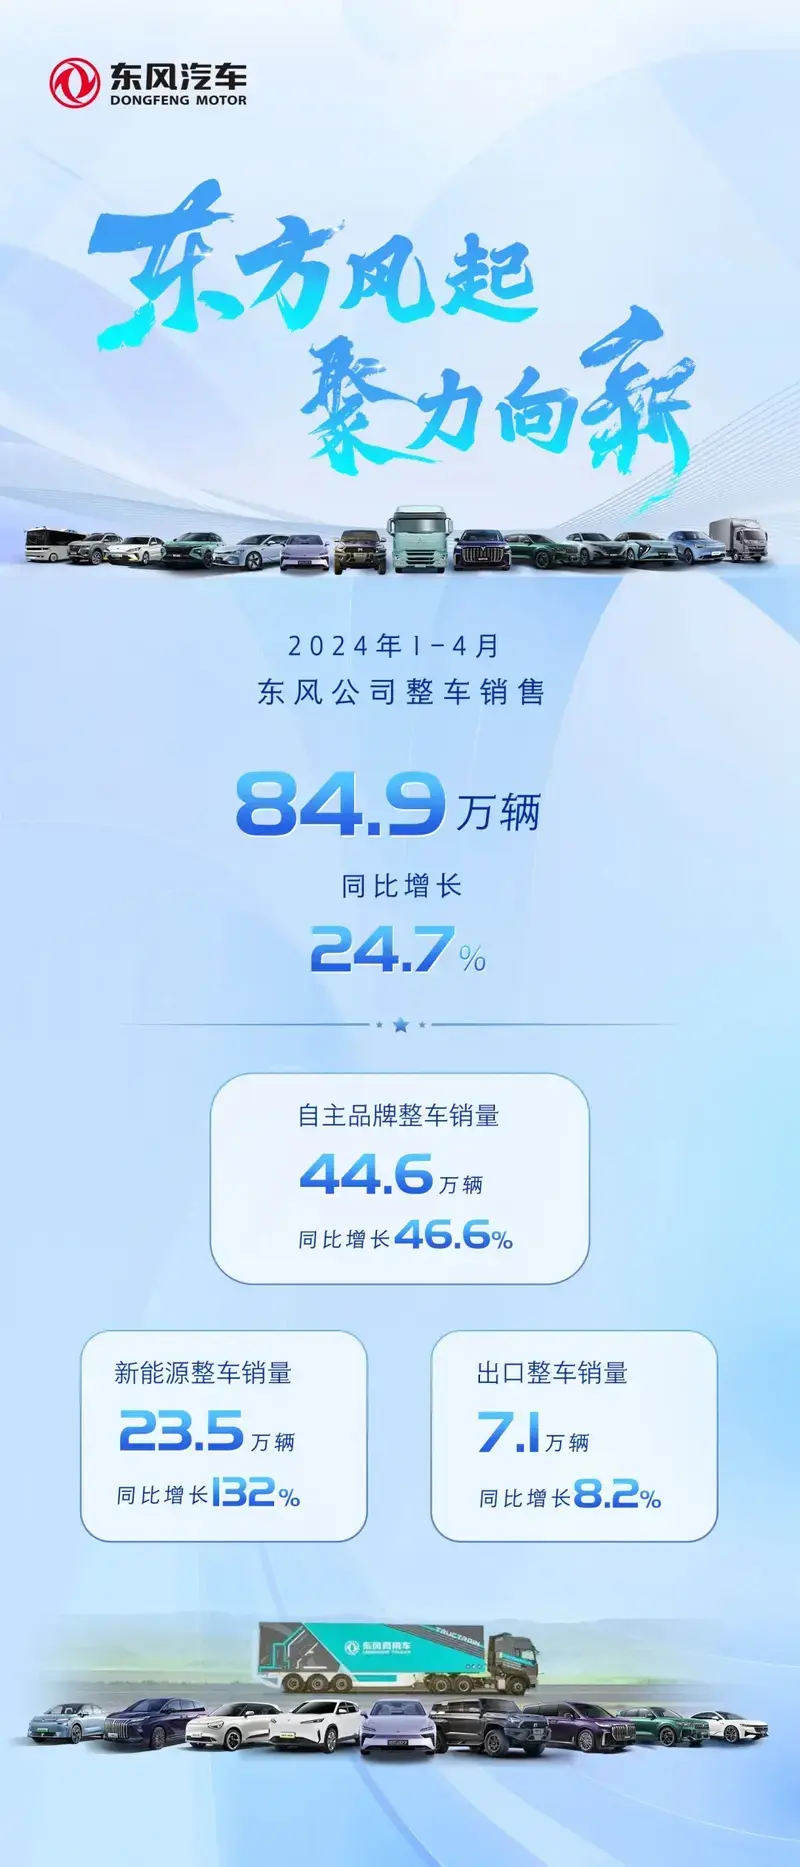 东风汽车2024年1-4月销量增长24.7%，新能源车增长132%